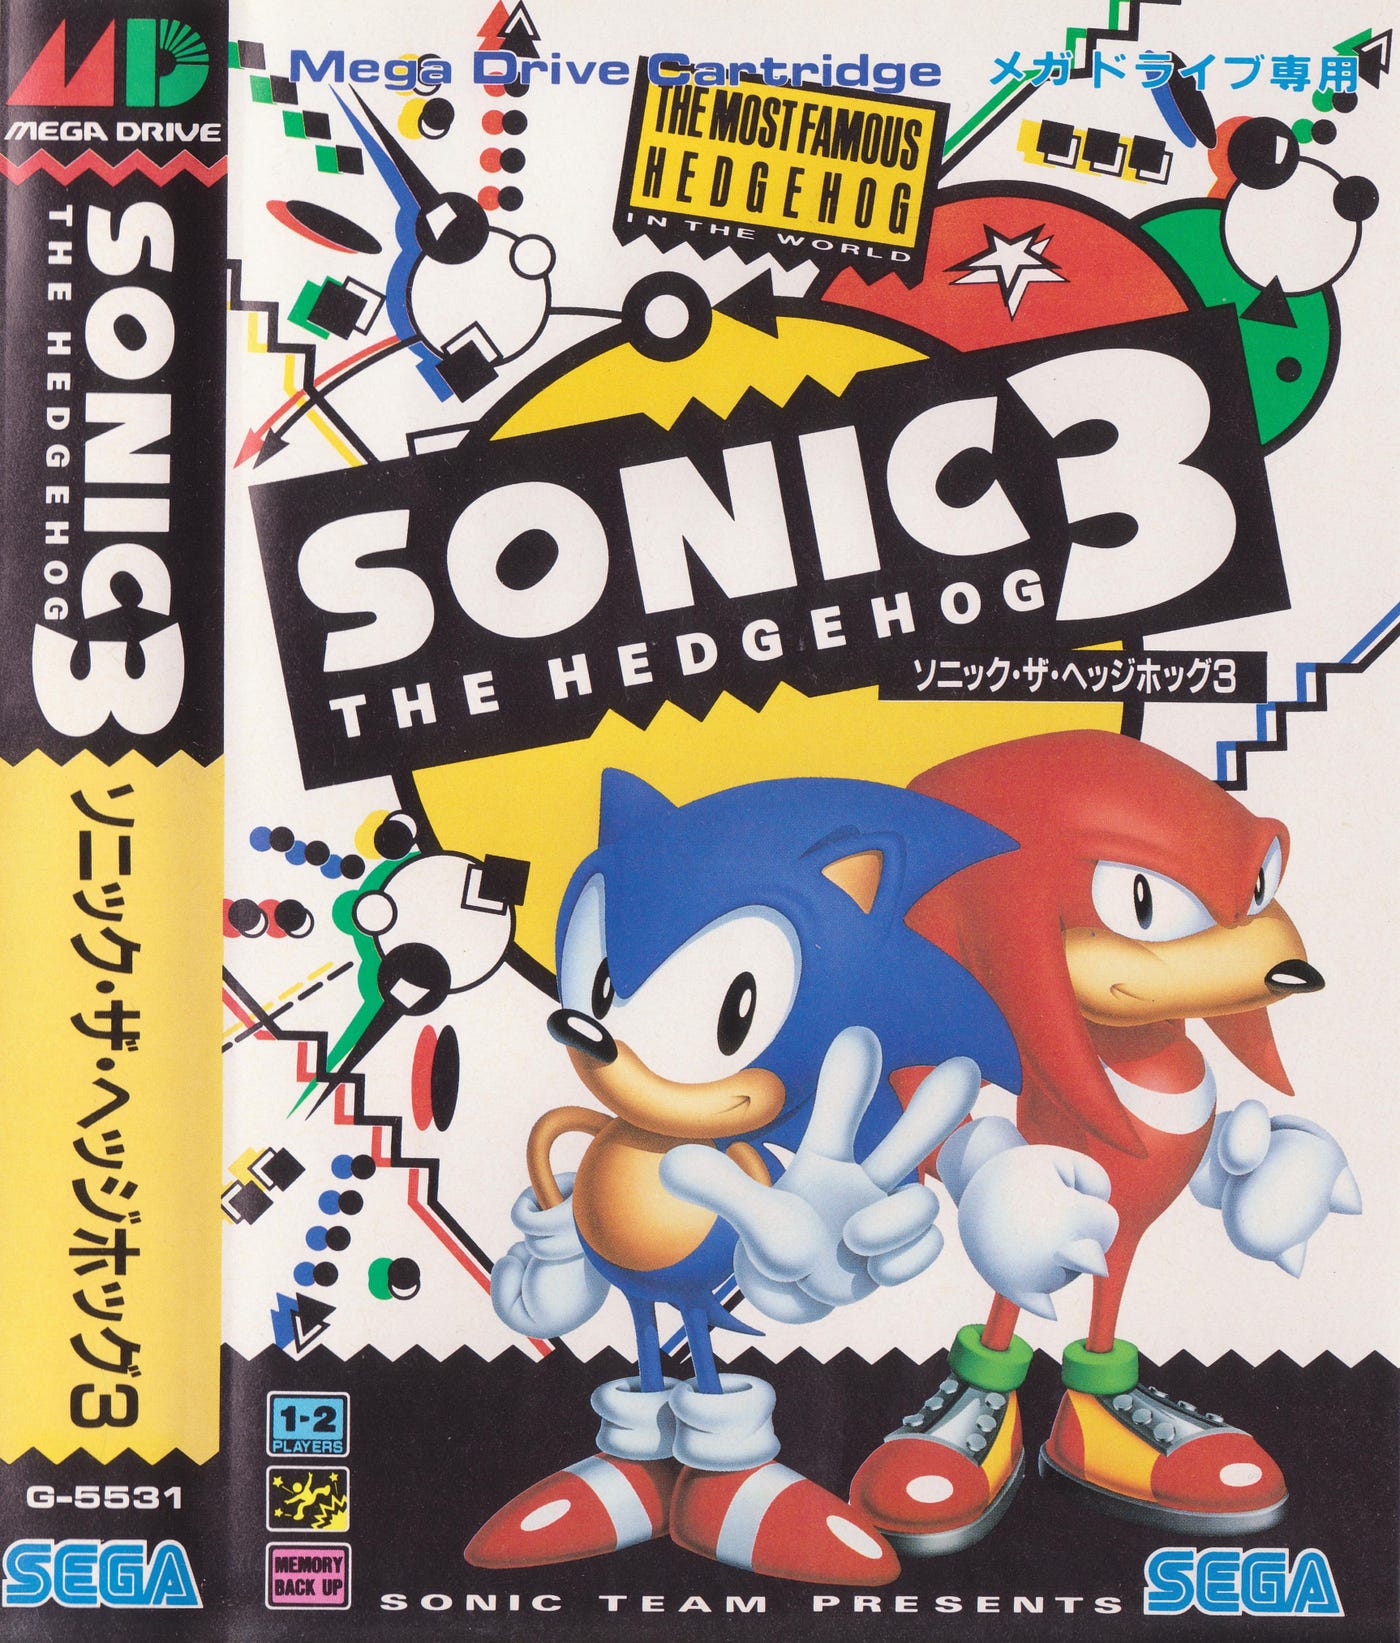 Video game:Sega Genesis Sonic the Hedgehog 2 - Sega — Google Arts